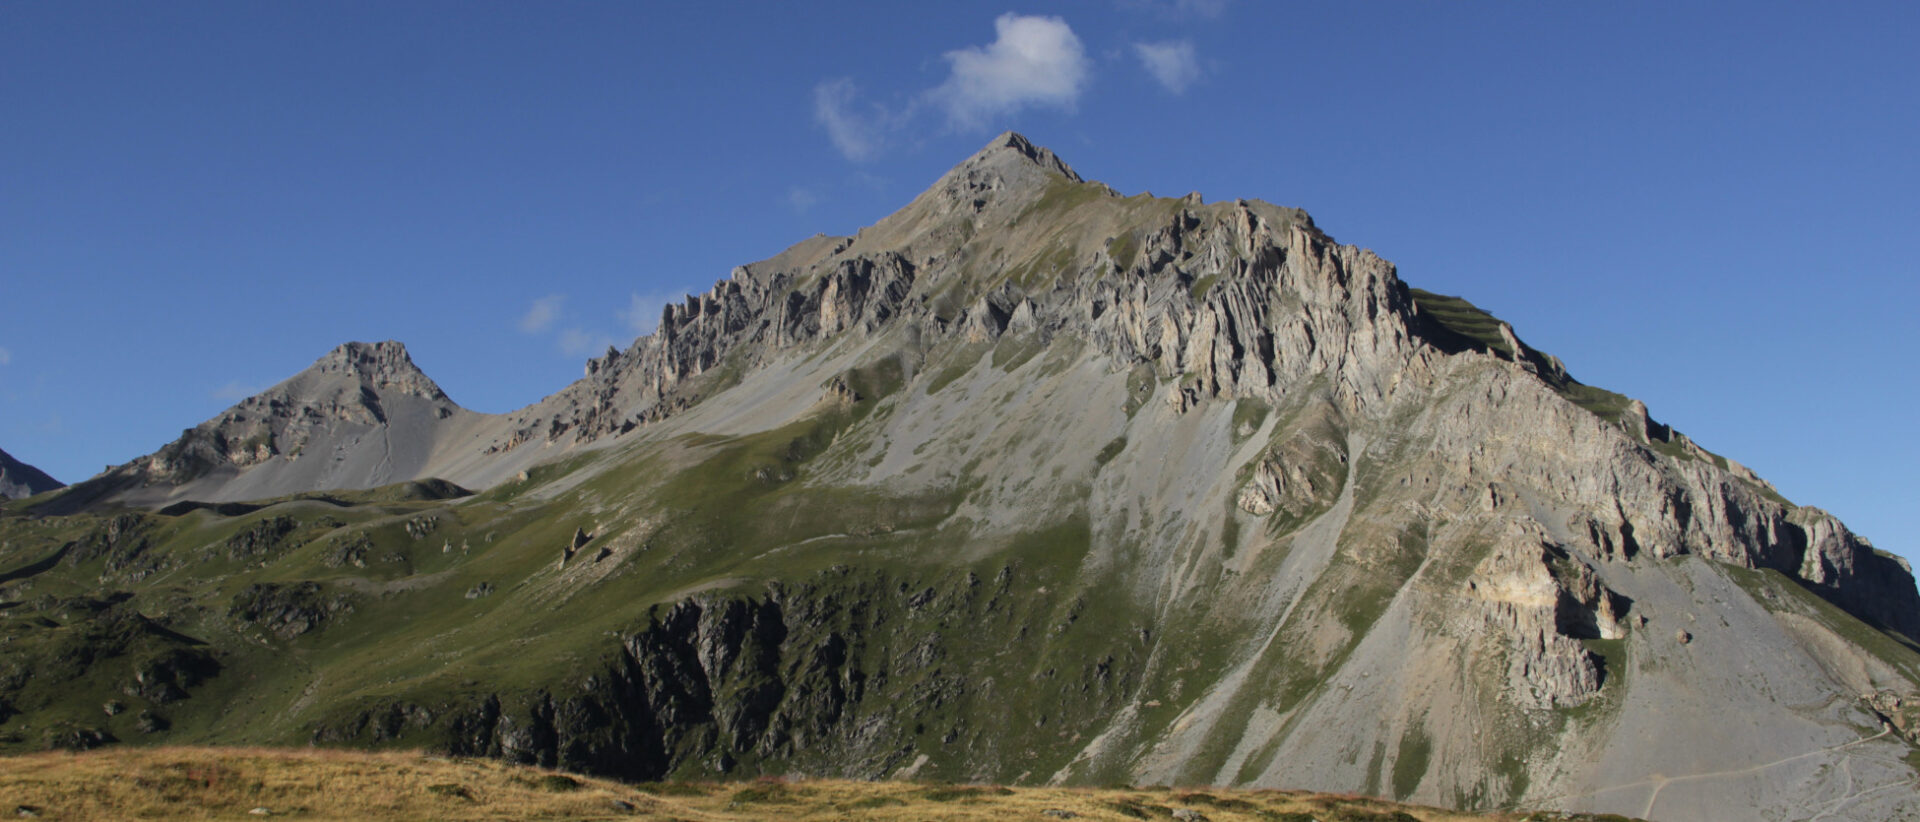 Der Grand Chavalard hat eine Höhe von 2899 m und liegt nordöstlich des Dent de Fully.